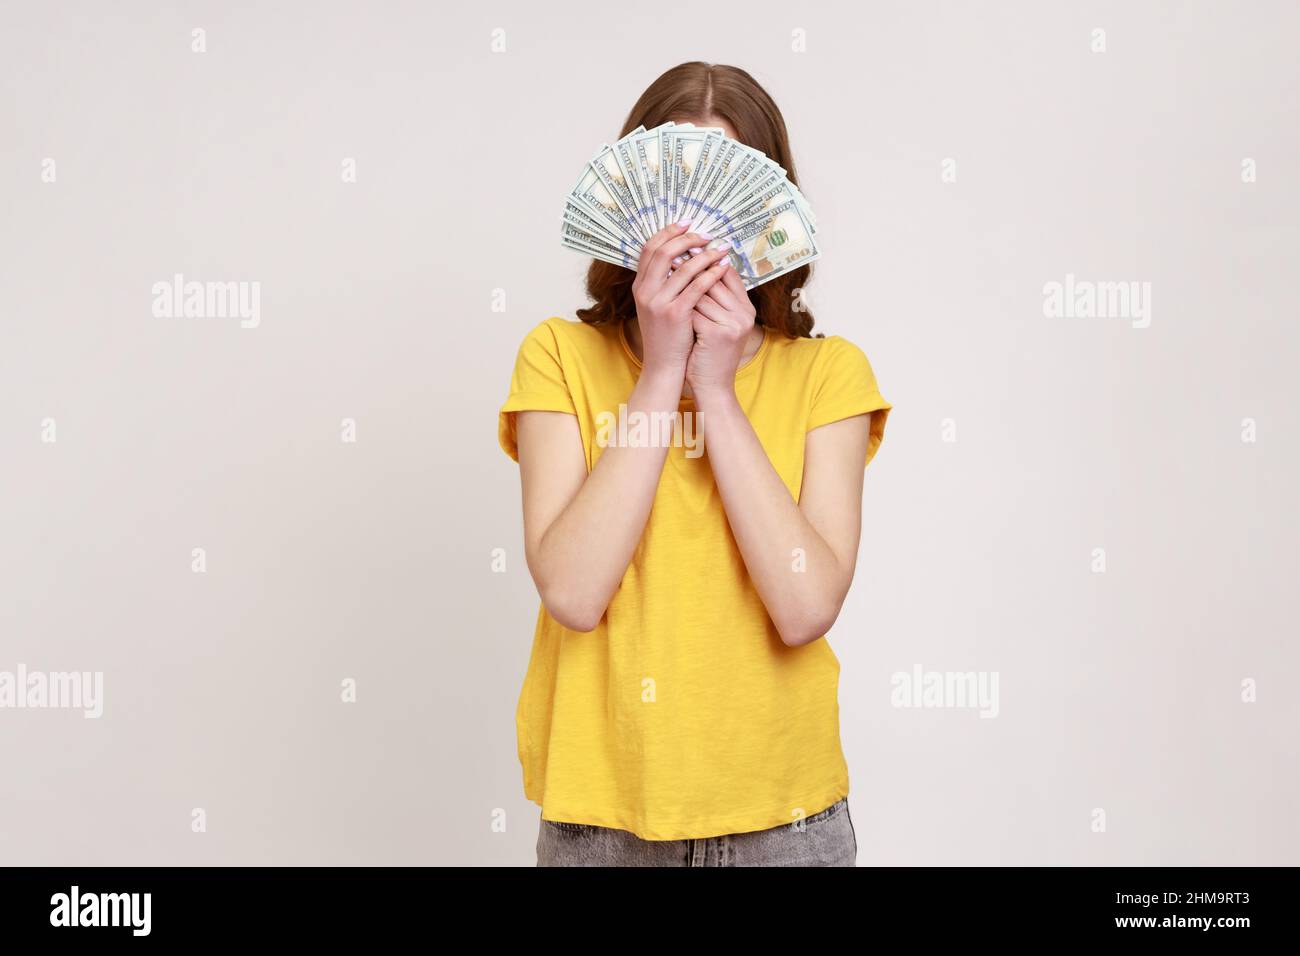 Femme inconnue dans le style urbain jaune T-shirt cache face derrière un bouquet de billets de dollars, personne anonyme tenant de l'argent, gain de loterie, gros profit. Prise de vue en studio isolée sur fond gris. Banque D'Images